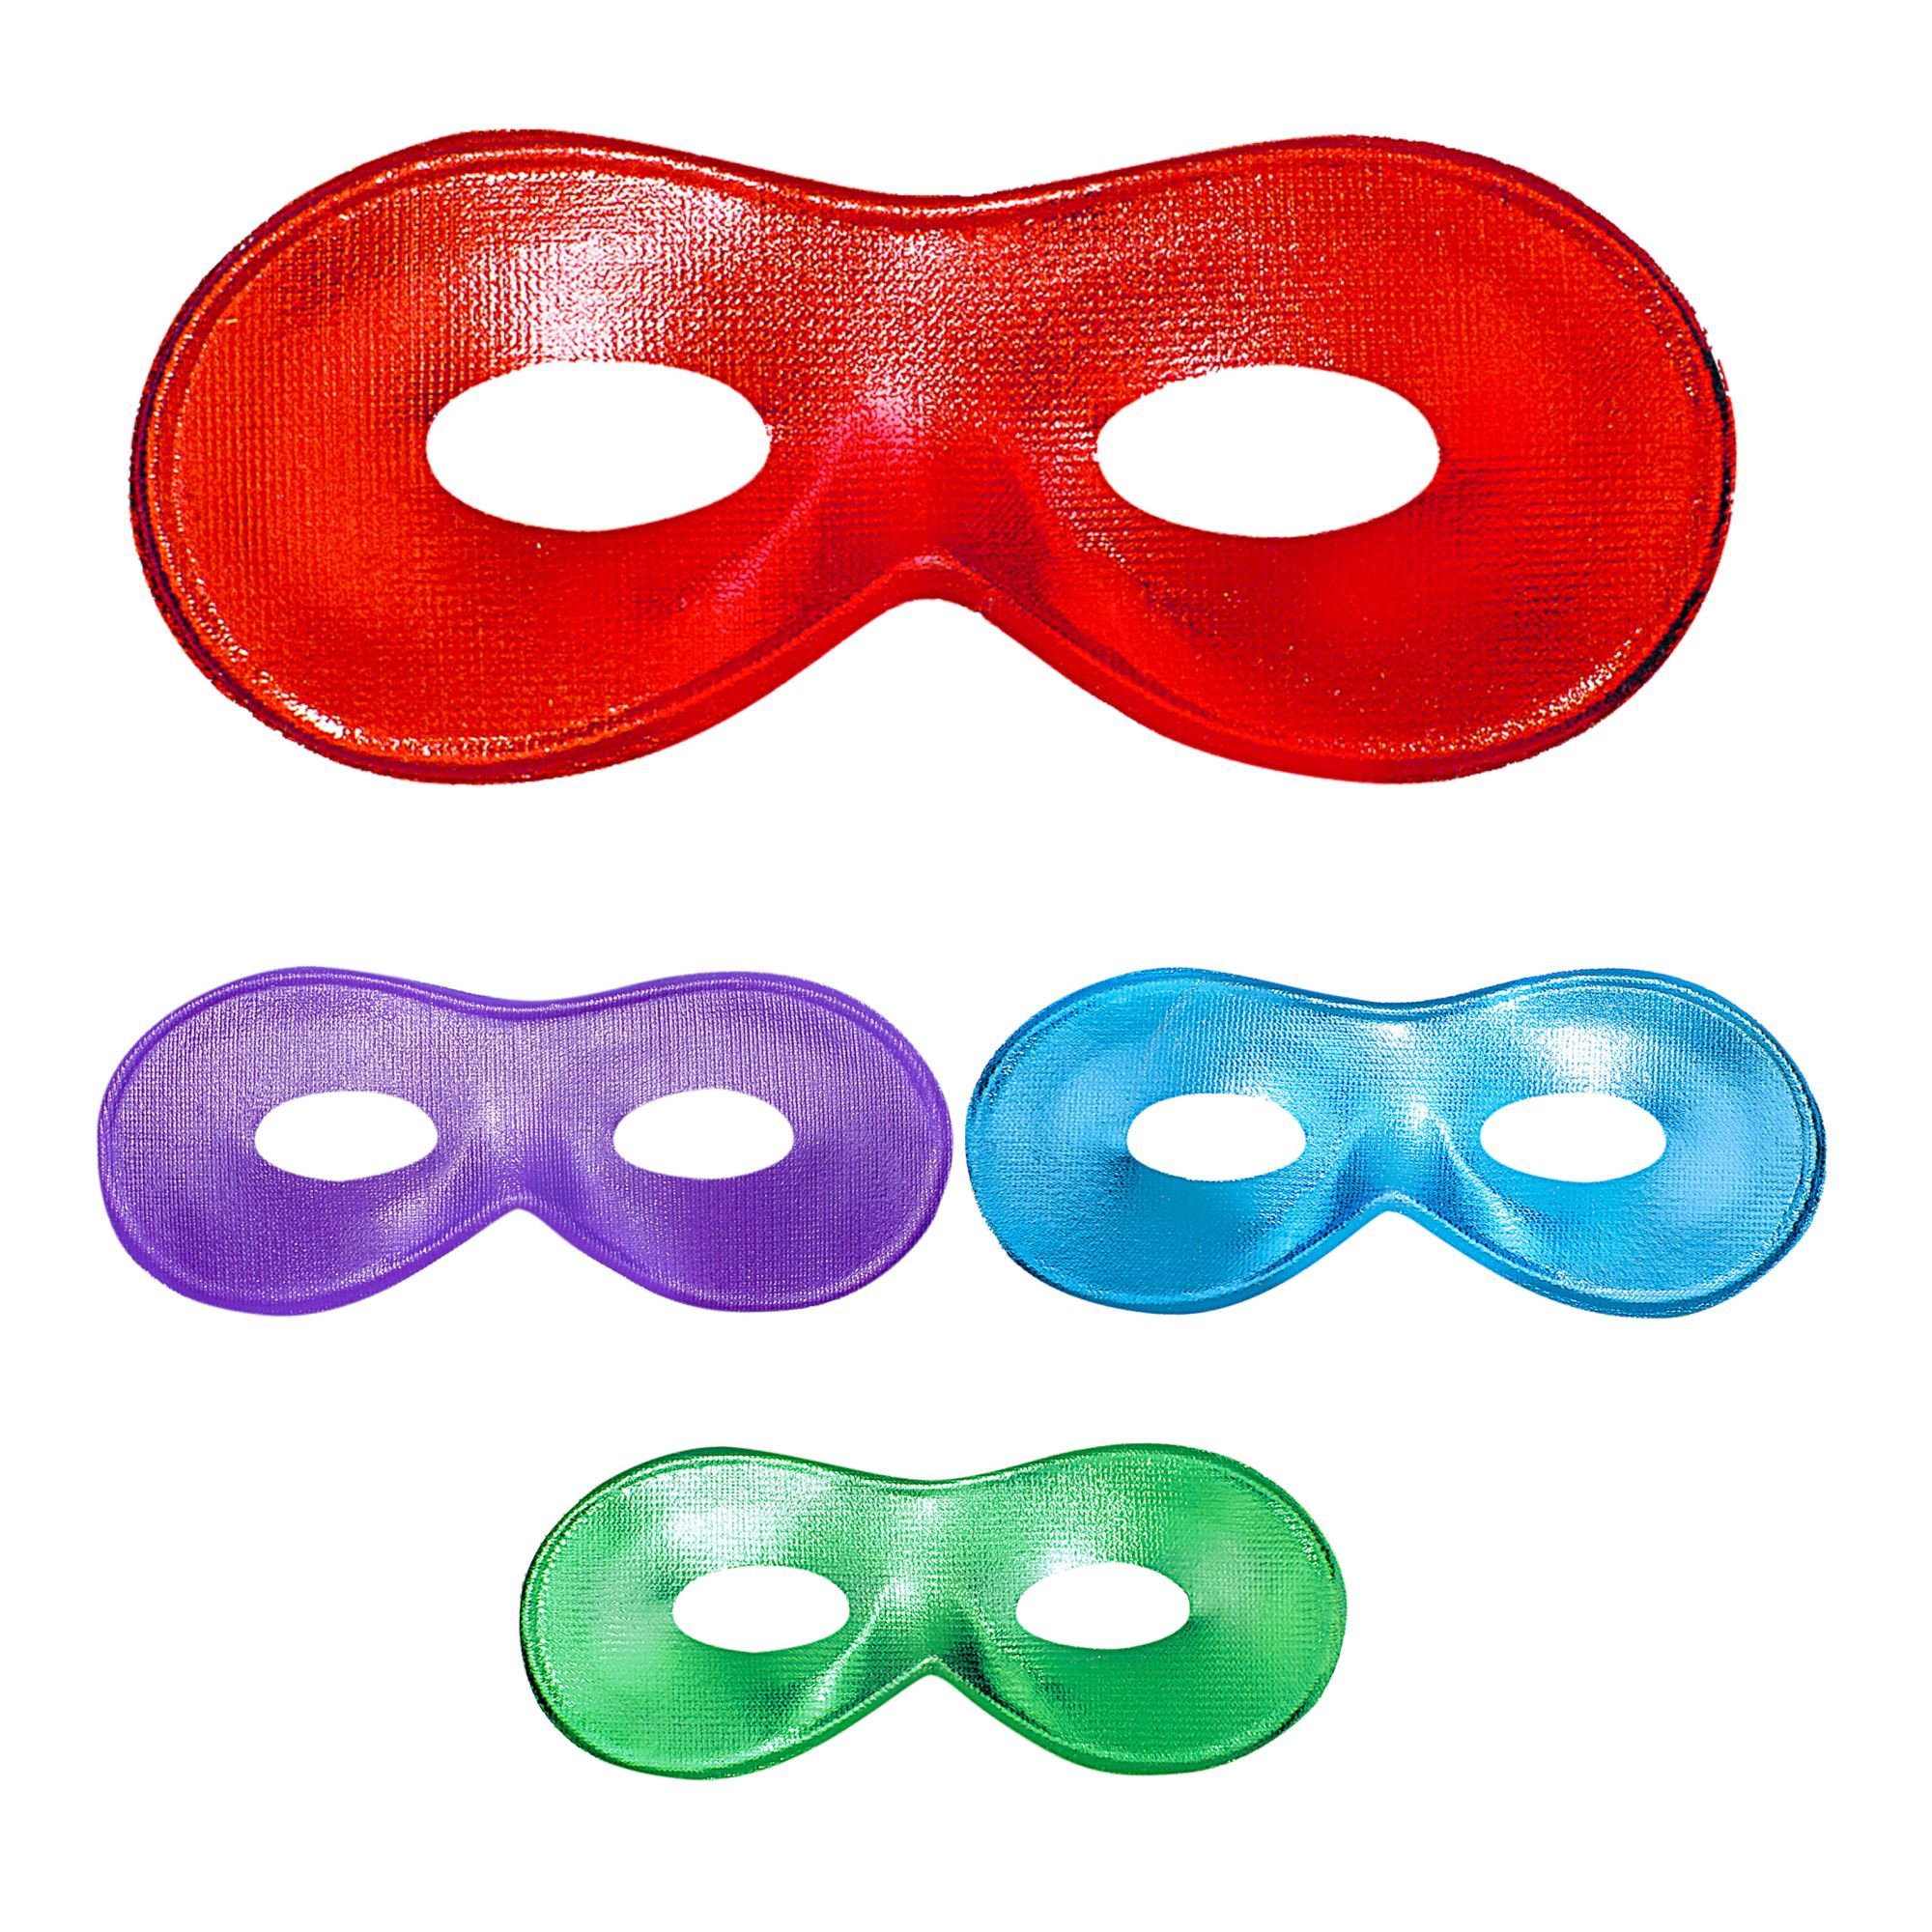 Oogmasker Fiesta diverse kleuren volwassen